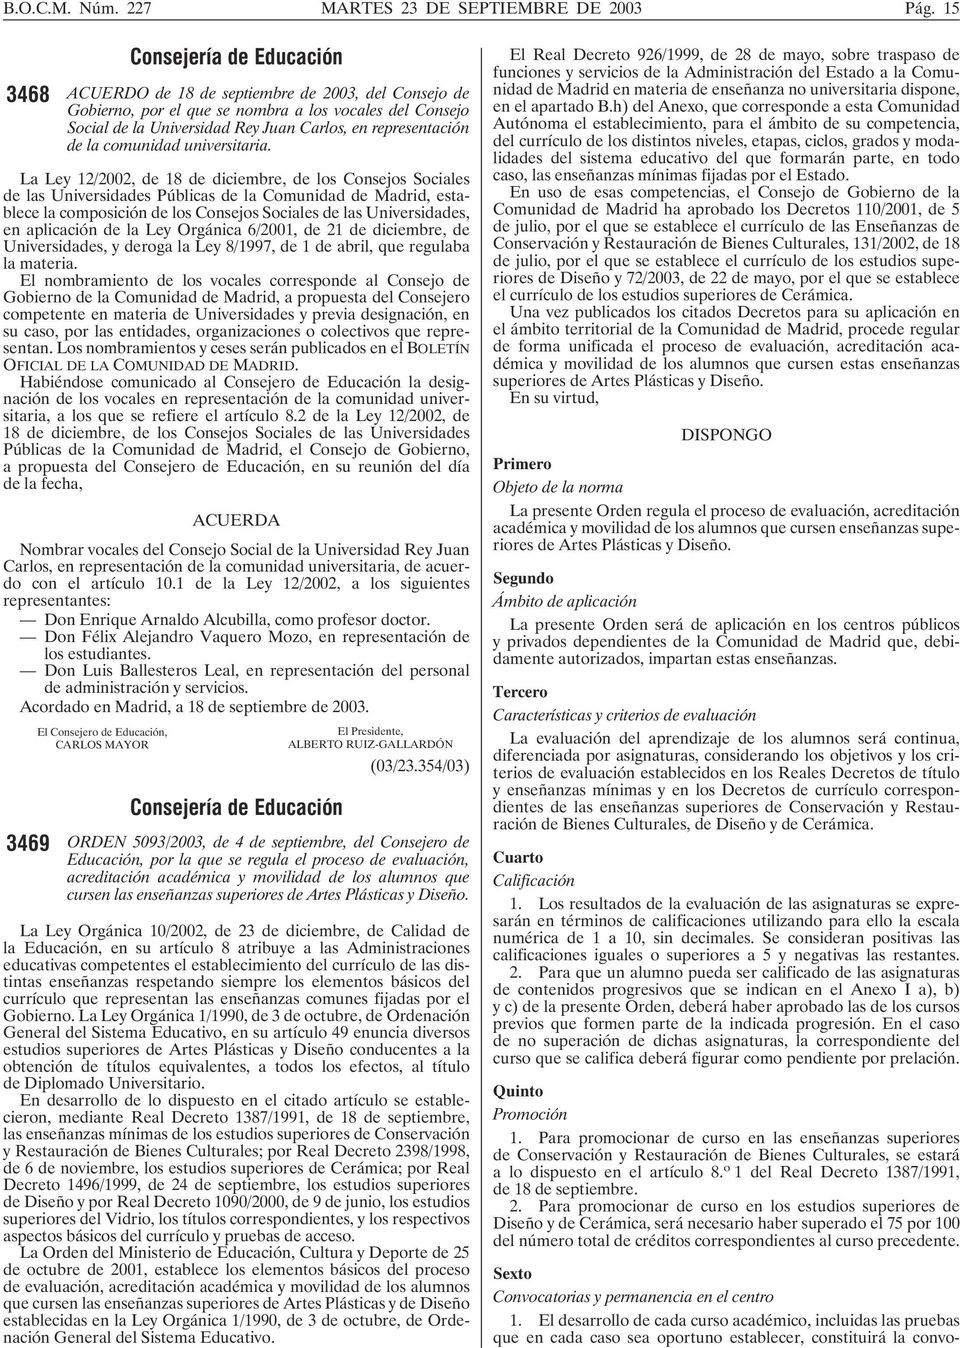 La Ley 12/2002, de 18 de diciembre, de los Consejos Sociales de las Universidades Públicas de la Comunidad de Madrid, establece la composición de los Consejos Sociales de las Universidades, en